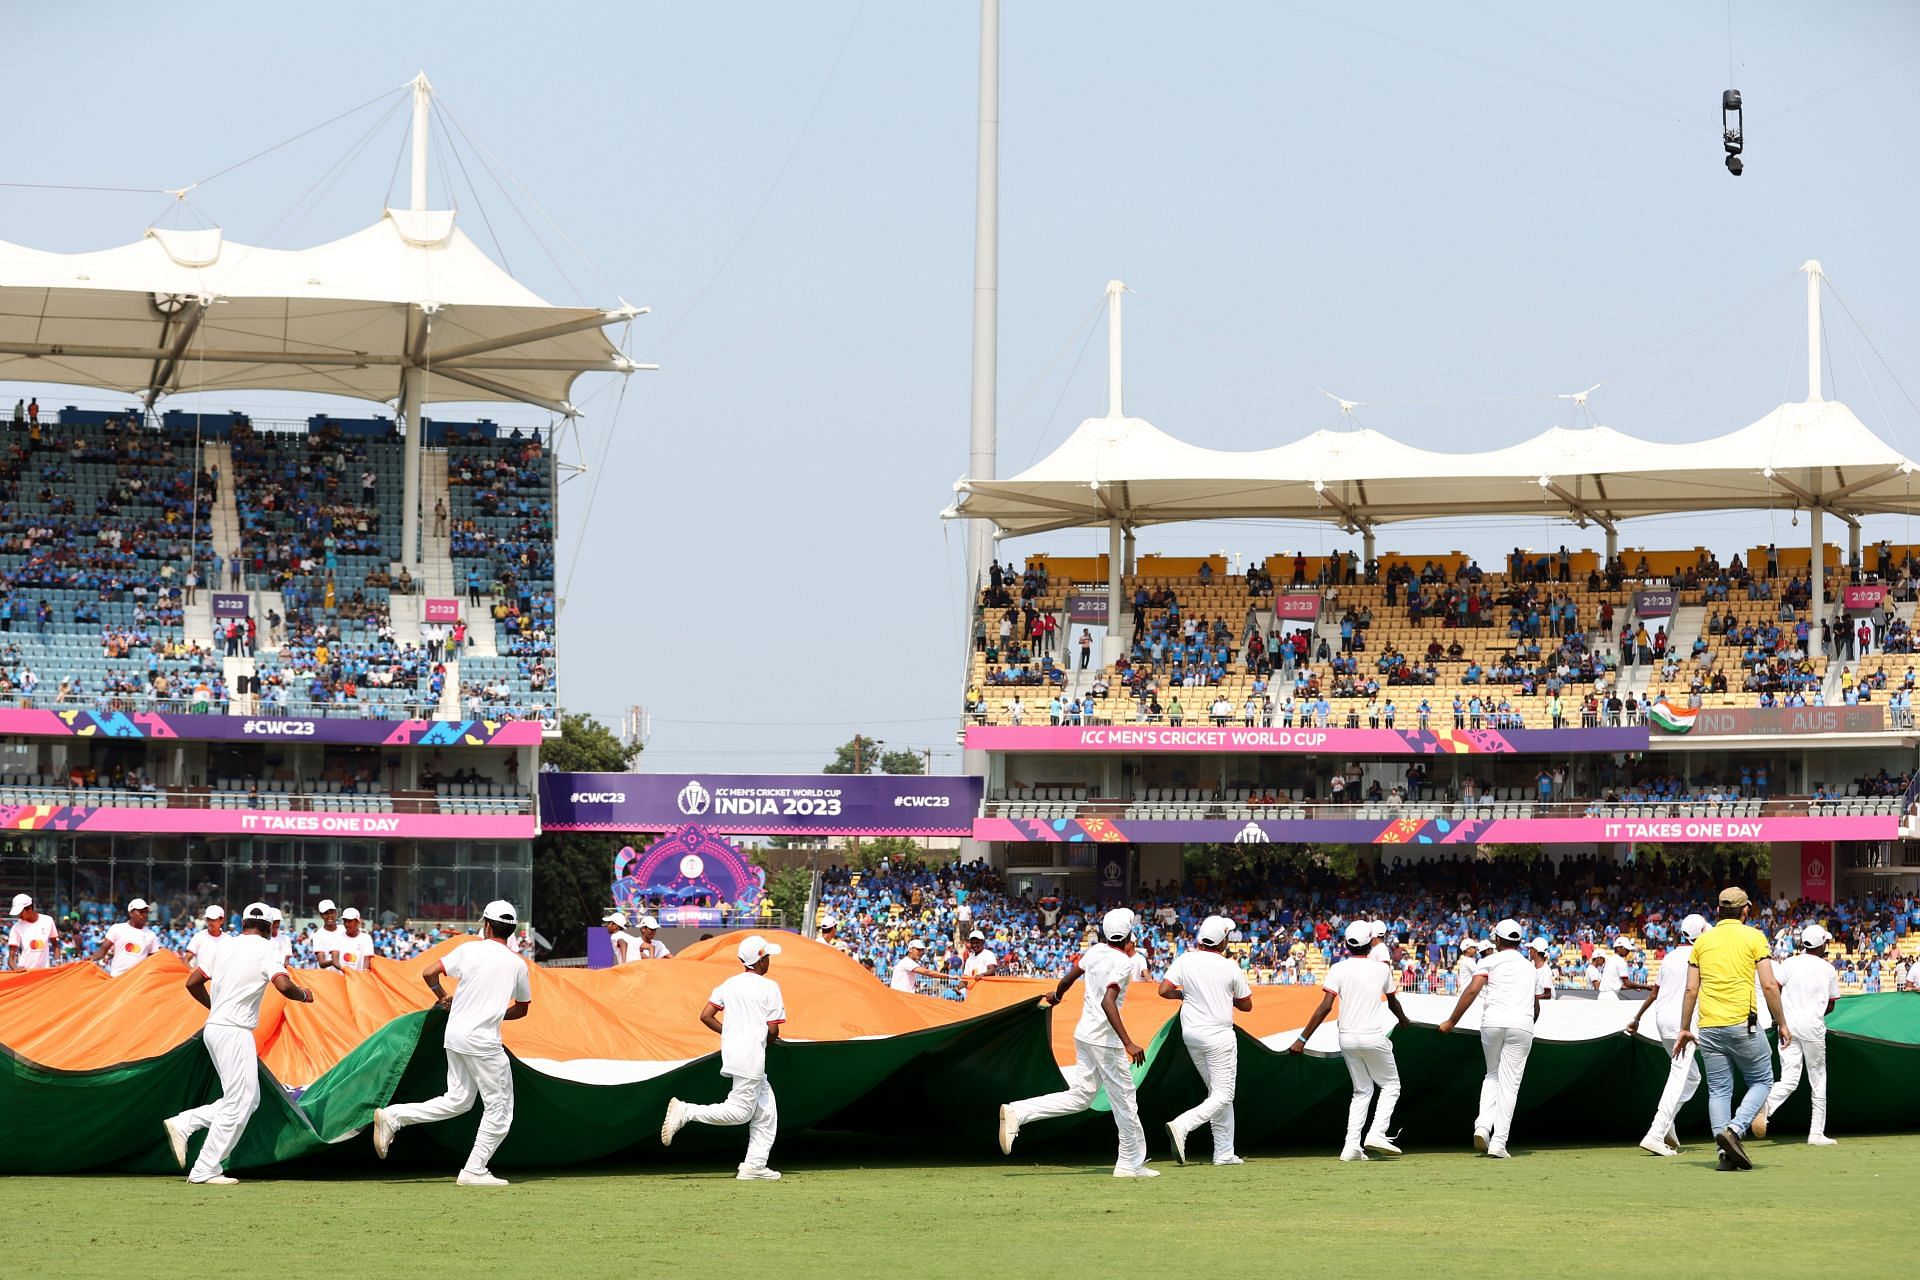 MA Chidambaram Stadium in Chennai [Getty Images]